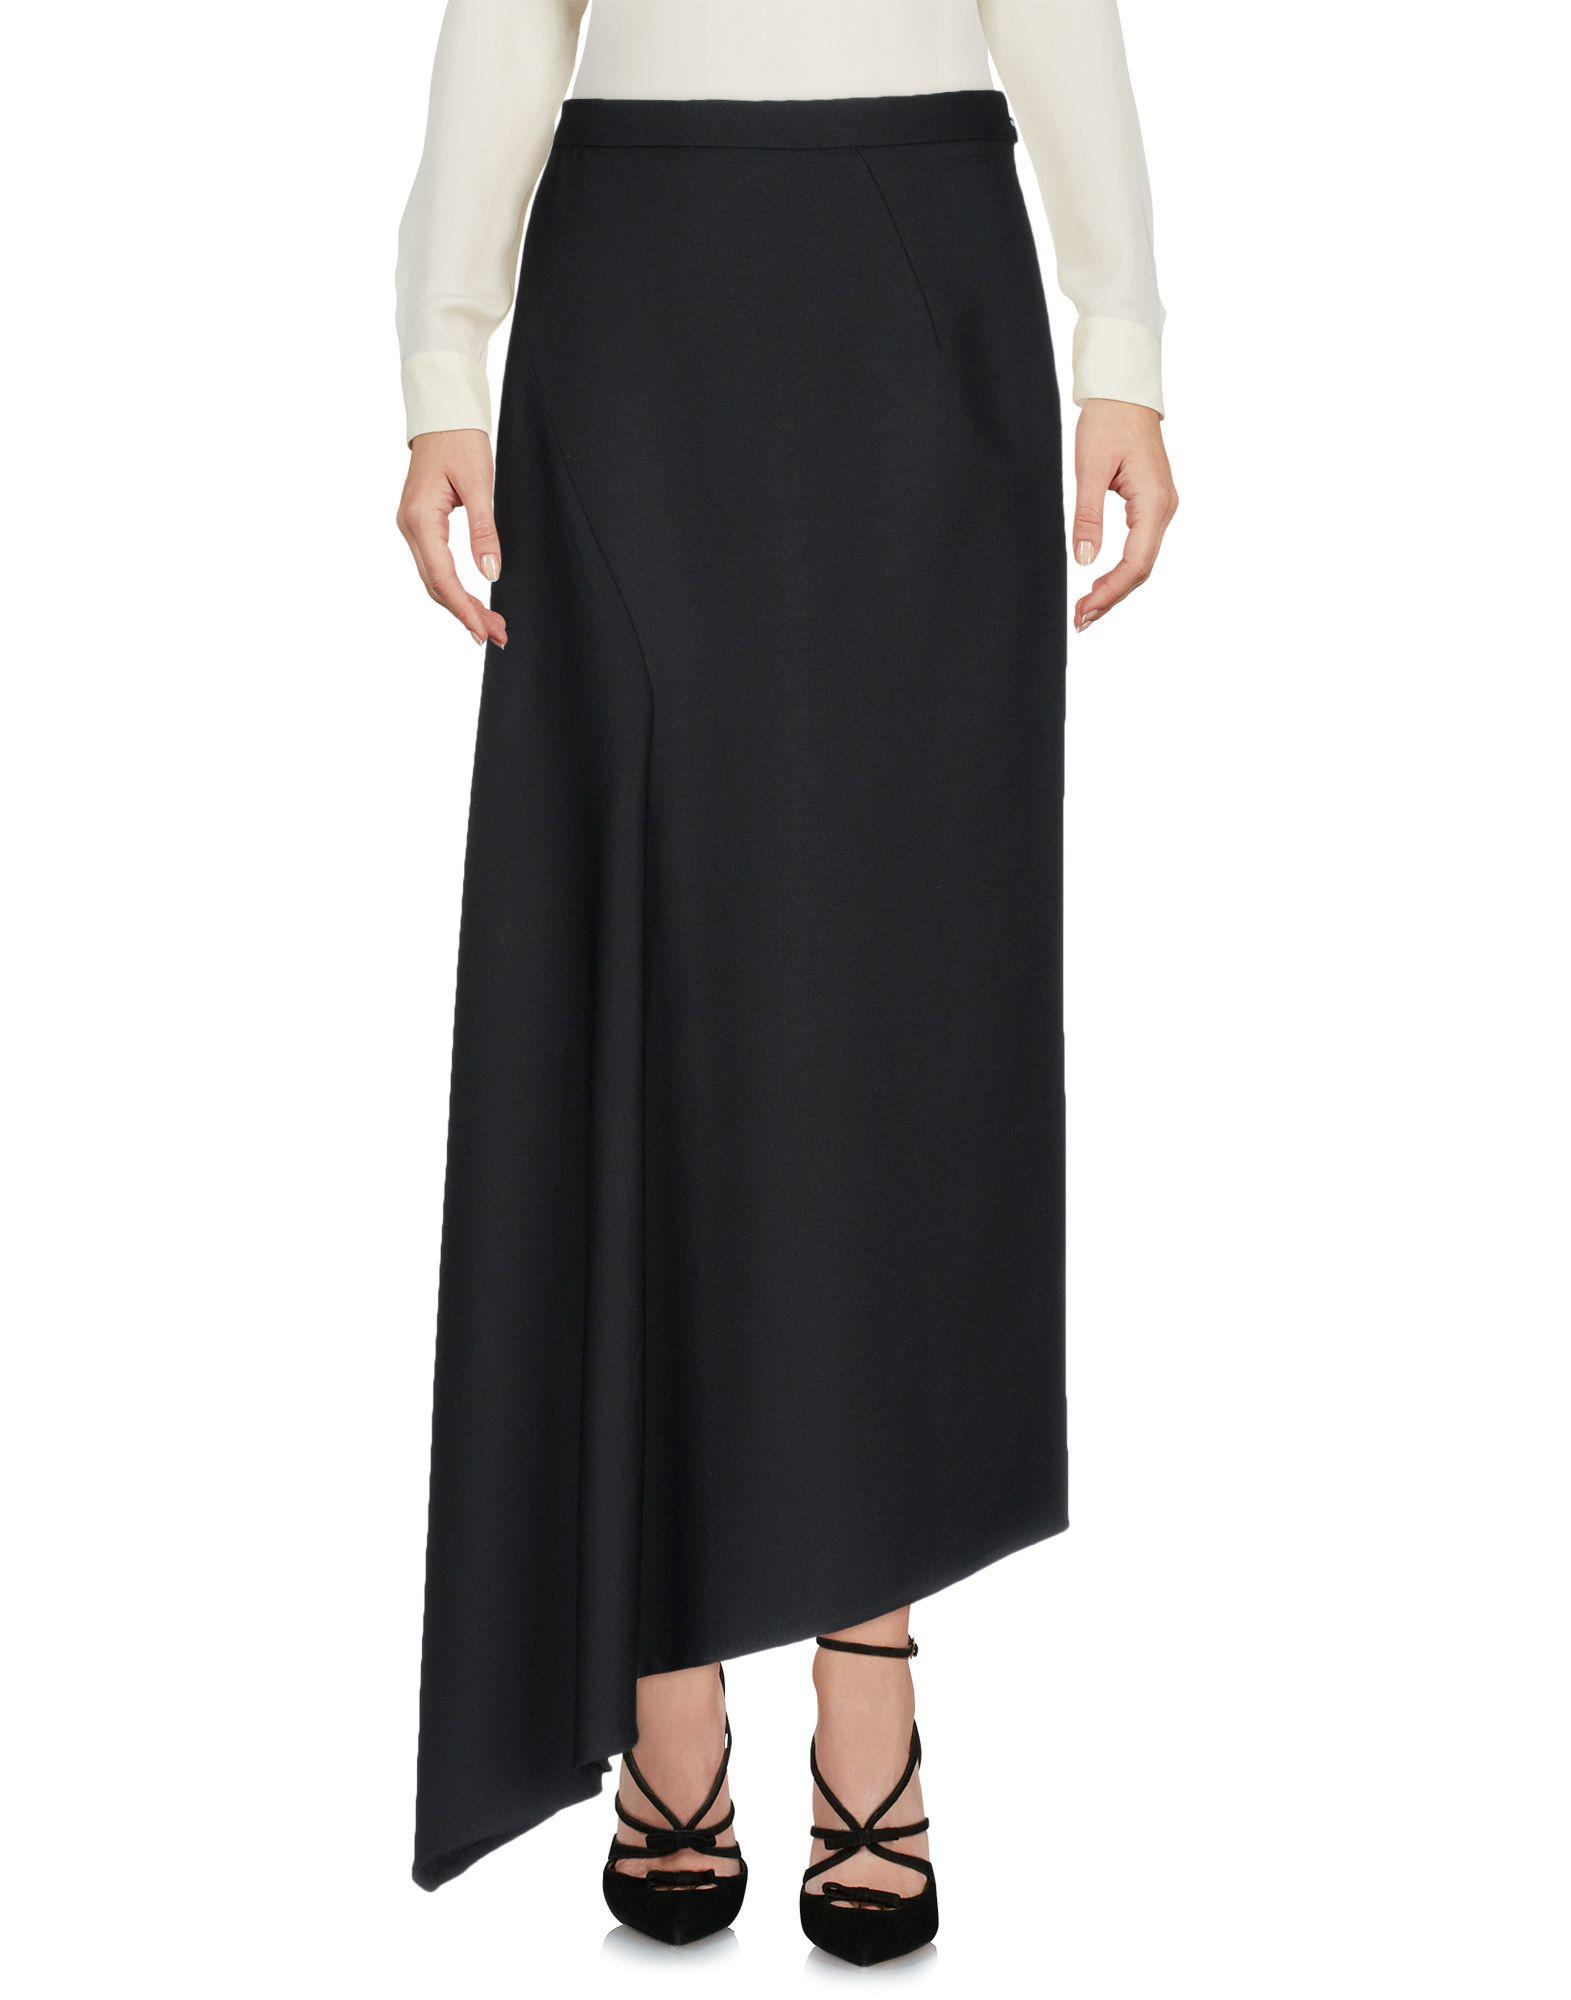 Vilshenko Wool 3/4 Length Skirt in Black - Lyst